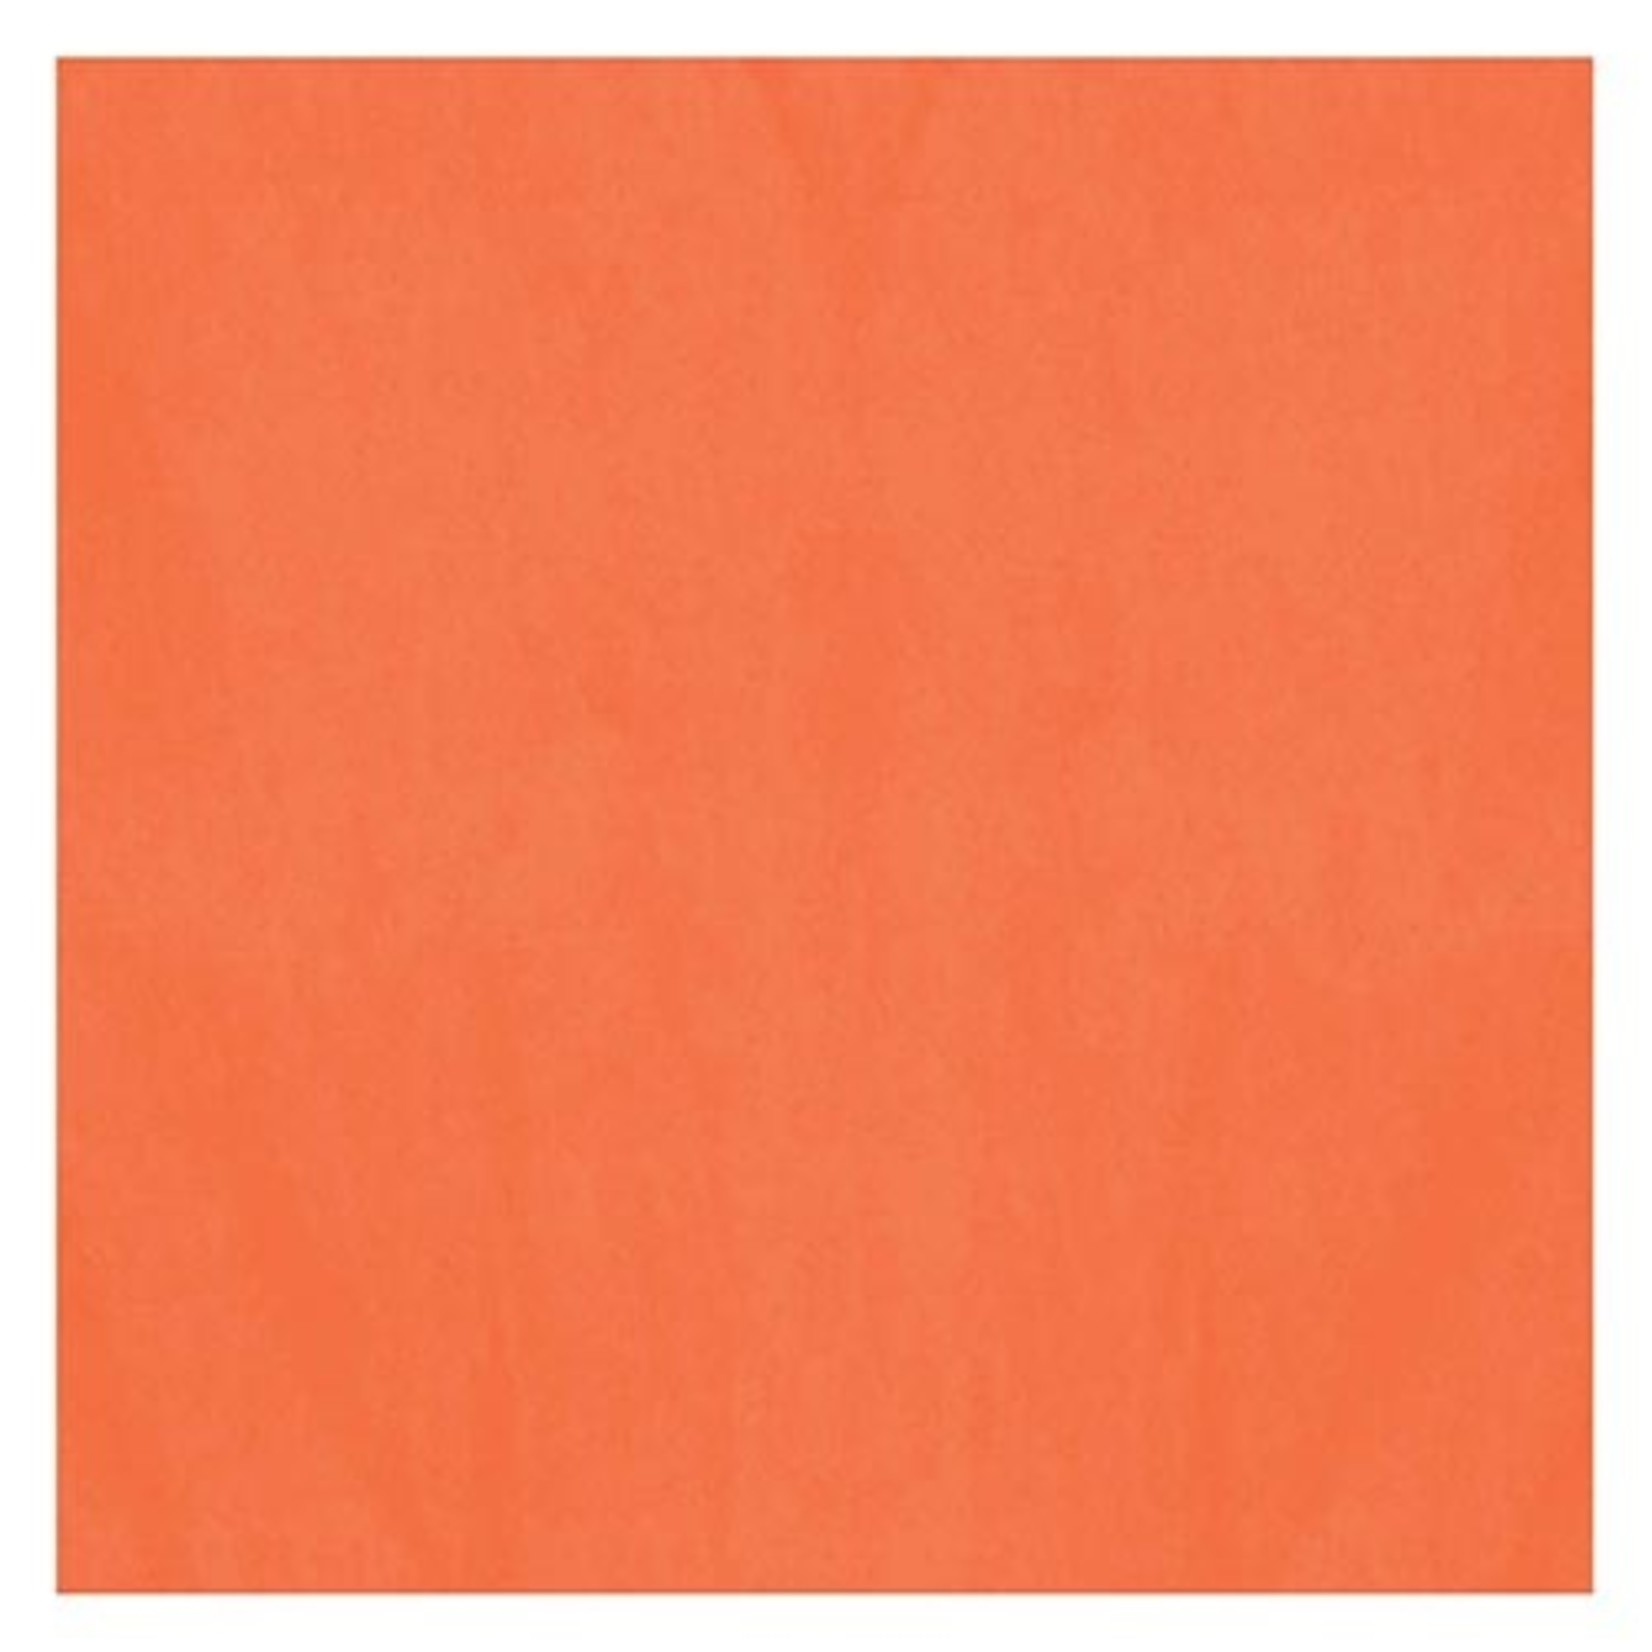 Amscan Orange Tissue Paper - 8ct. (20" x 20")